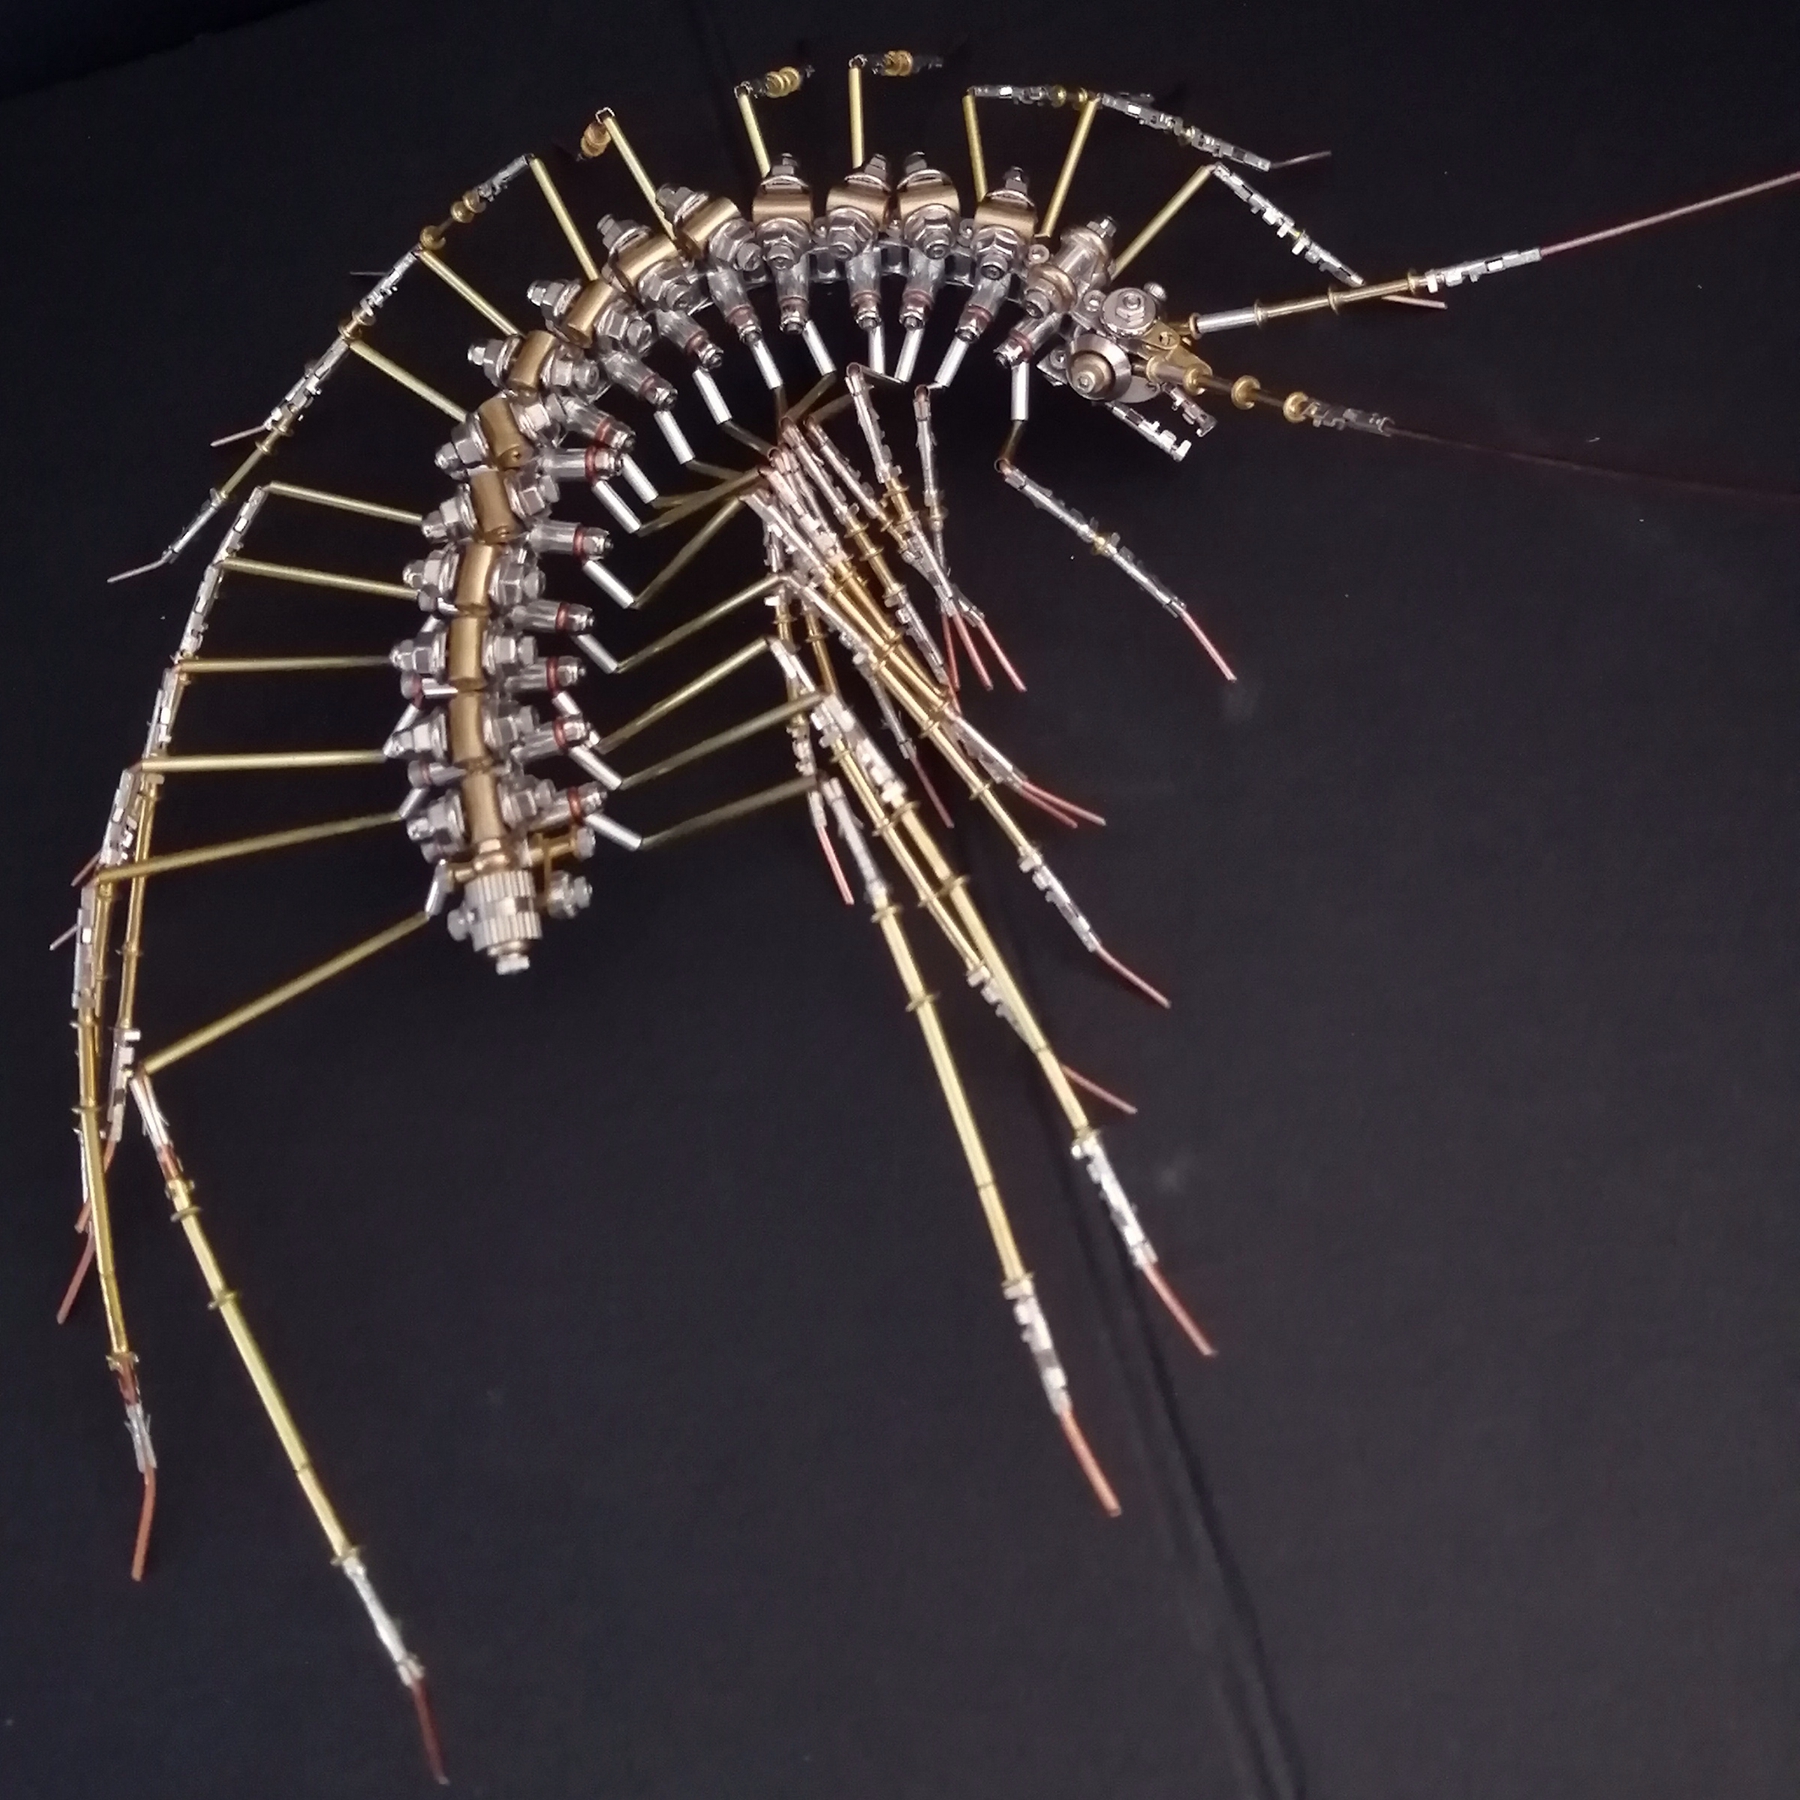 机械蚰蜒金属拼装昆虫高难度积木3D立体拼图玩具模型创意生日礼物